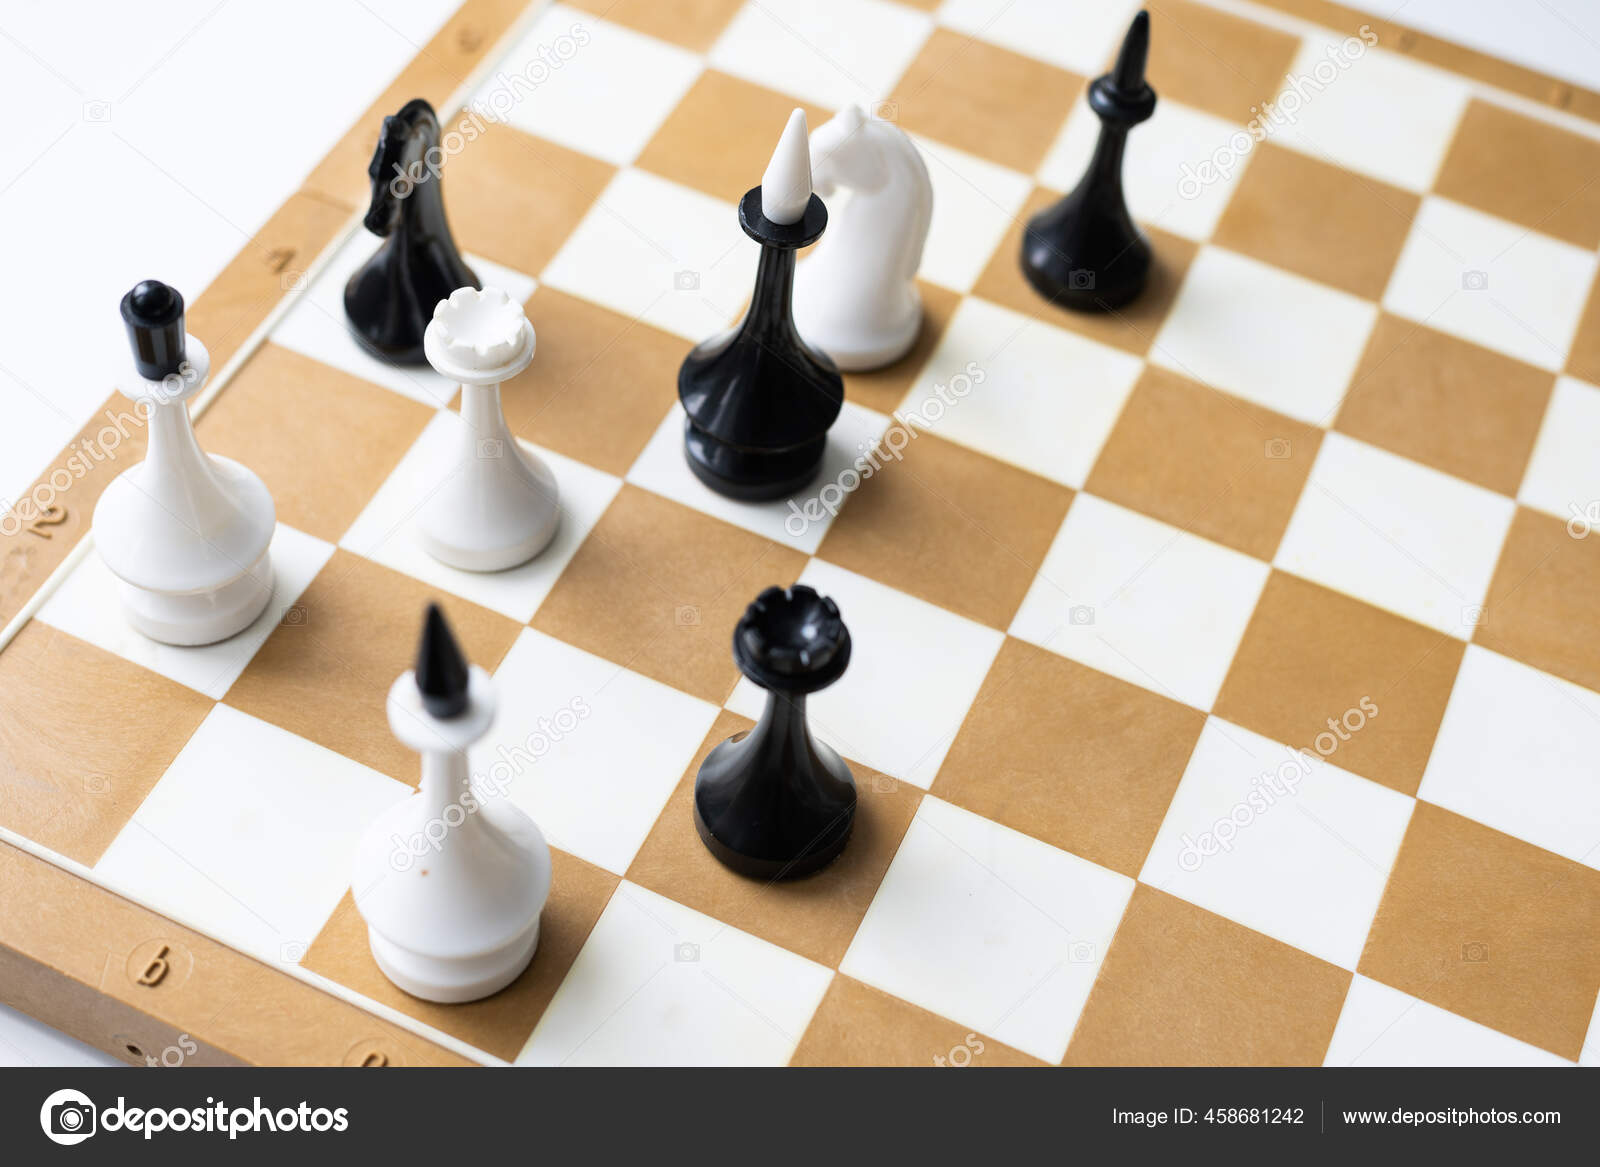 Tabuleiro de xadrez com peças de xadrez colocadas em um fundo